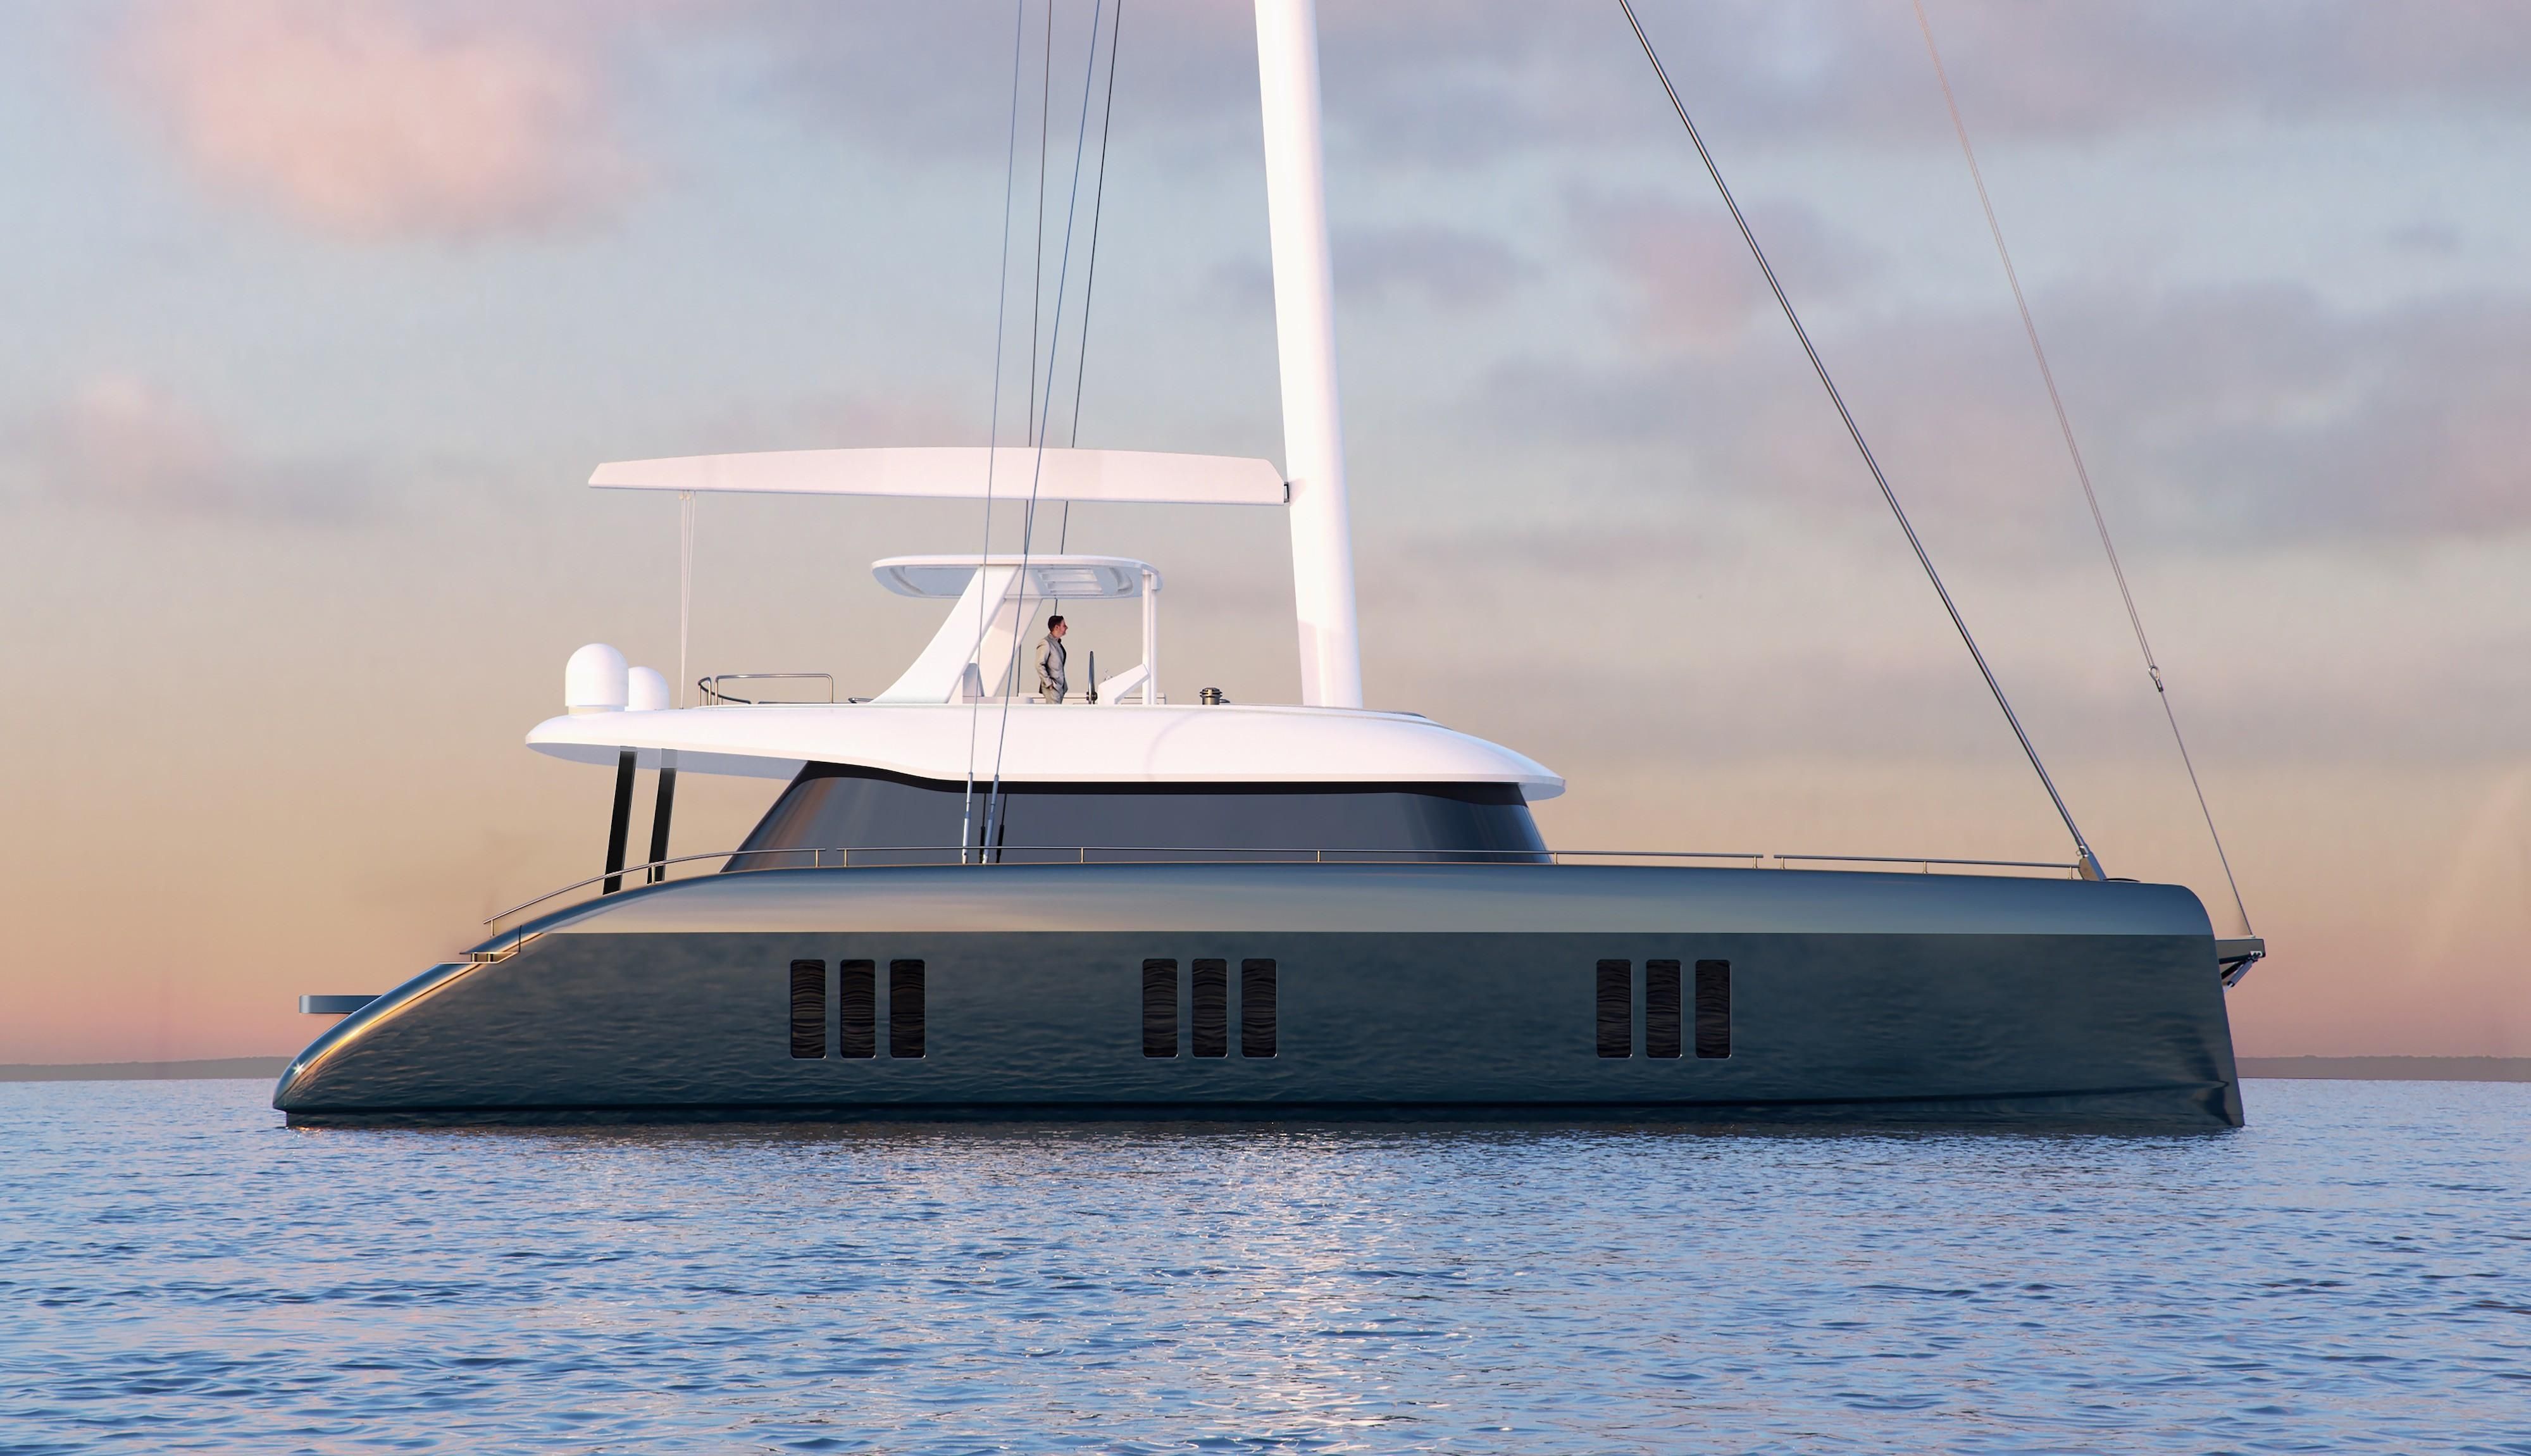 2020 Sunreef 70 Sailing Catamaran for sale - YachtWorld